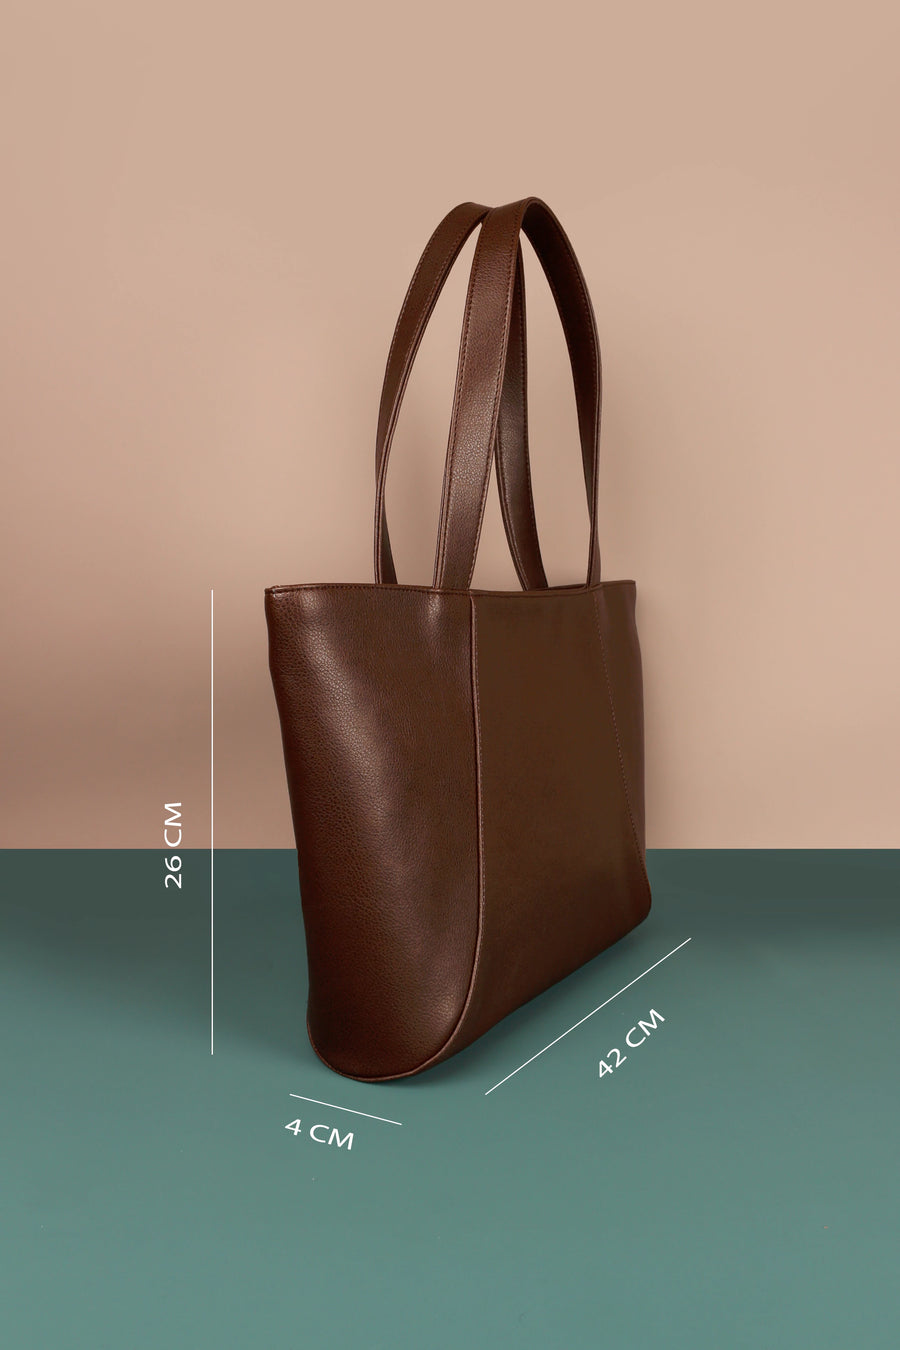 June Vegan Leather women tote bag taupe measurement